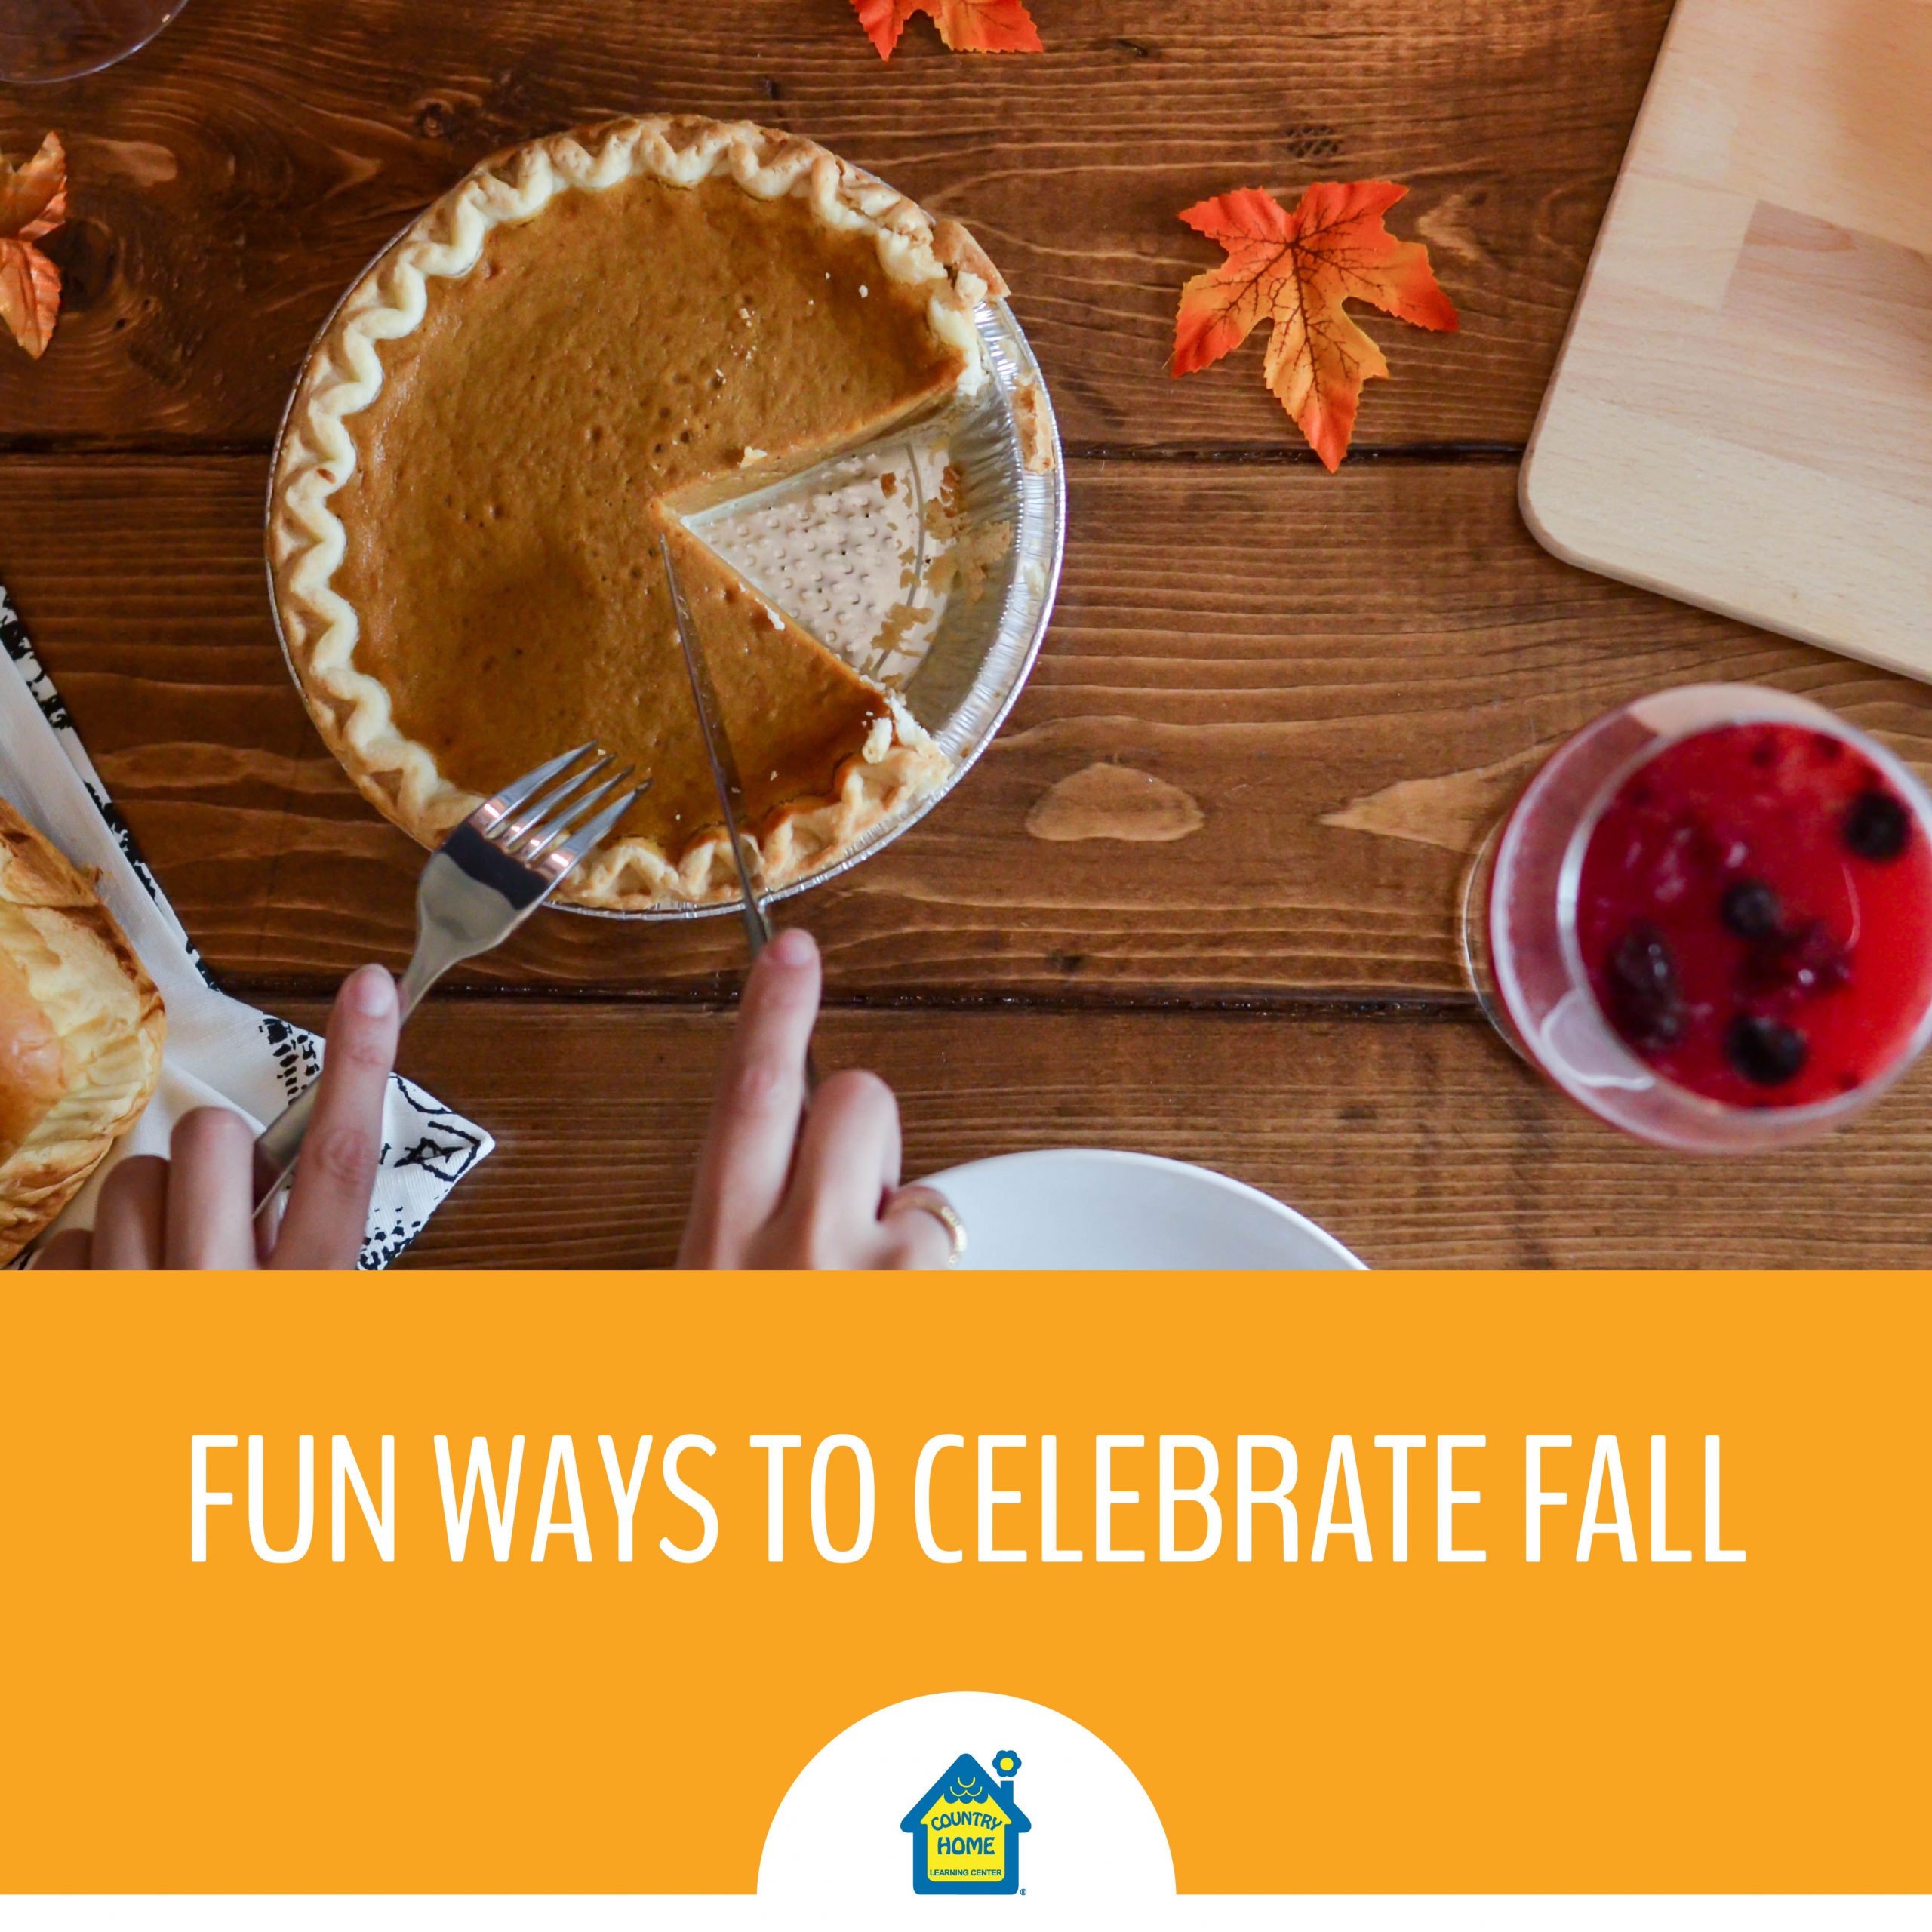 Fun Ways to Celebrate Fall